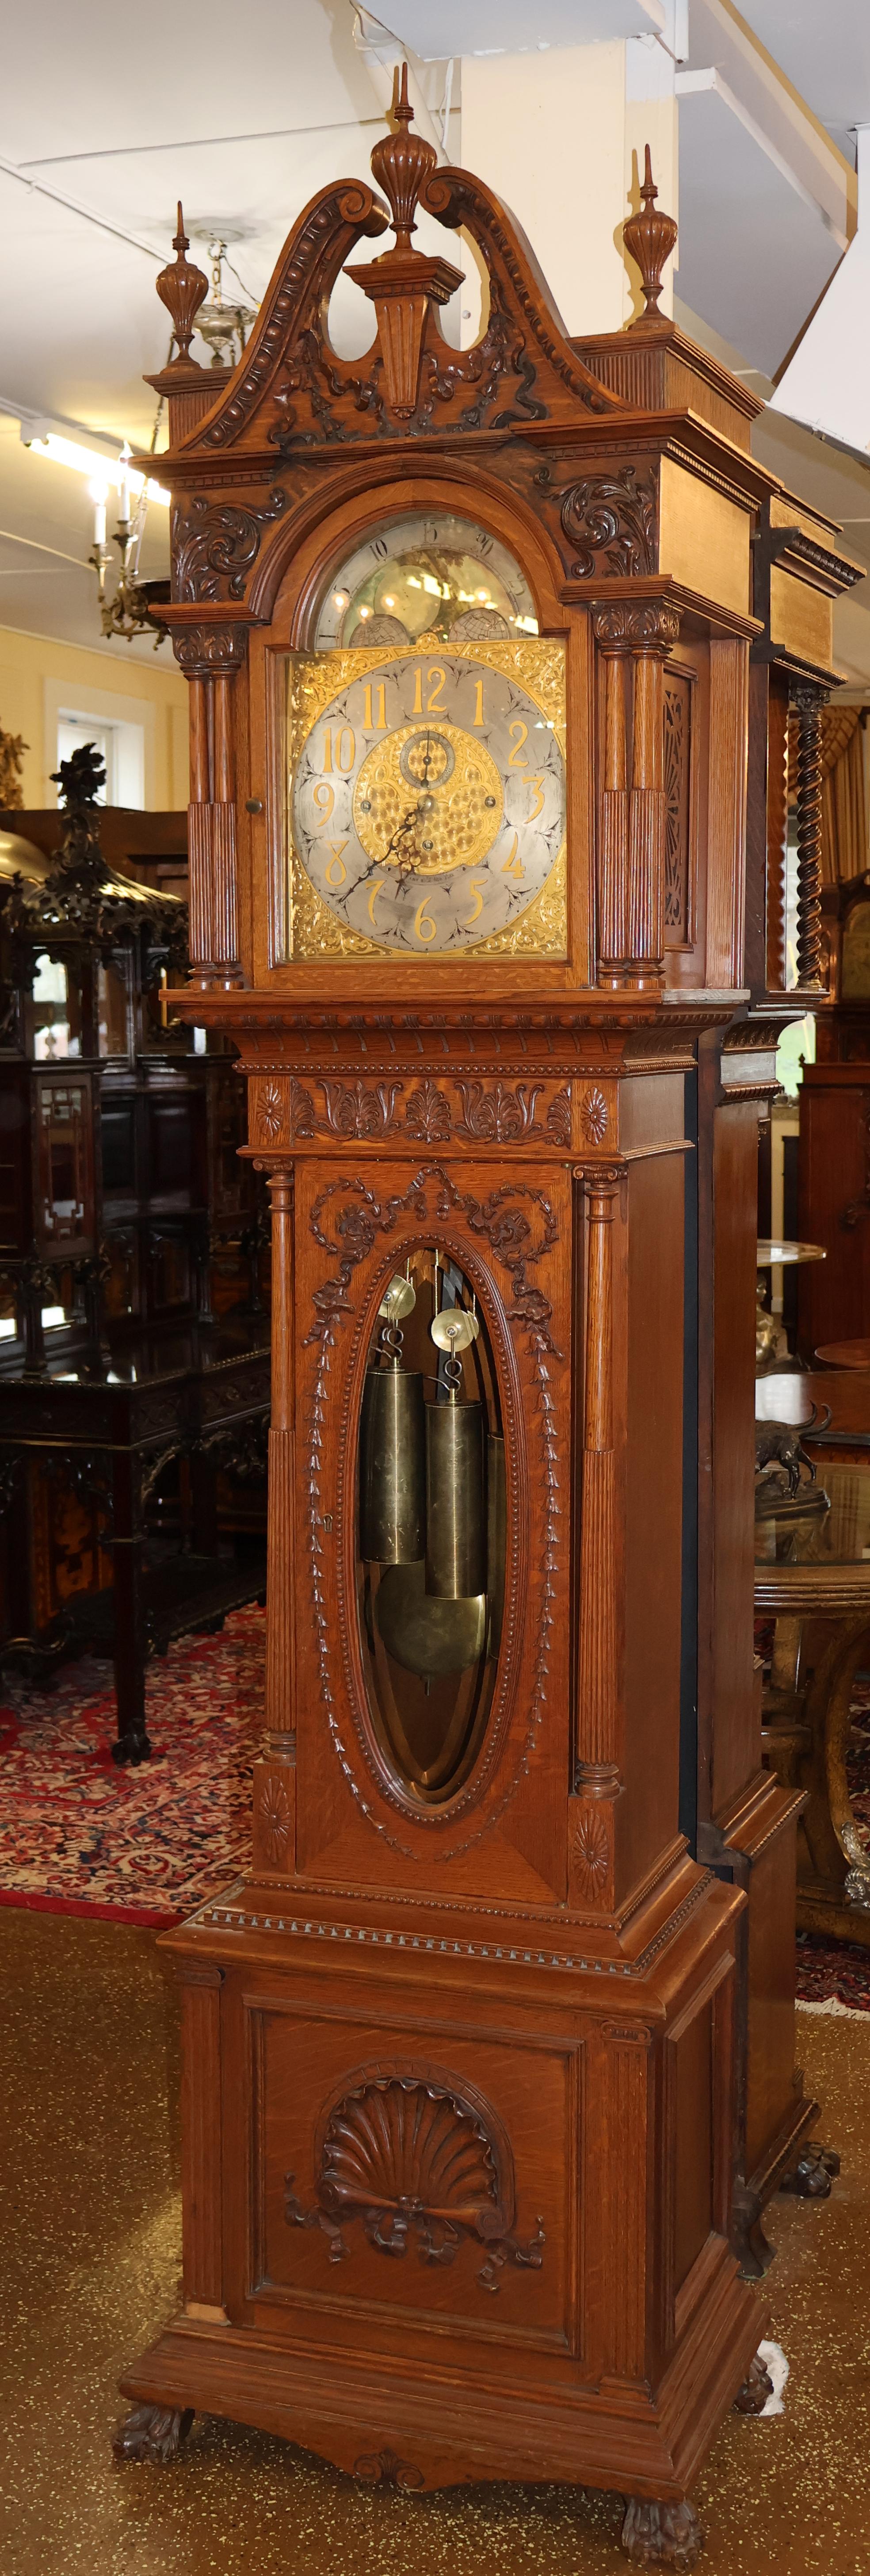 Horloge grand-père Tiffany & CO du 19e siècle en chêne à 5 gongs musicaux et à grande caisse

Dimensions : 104